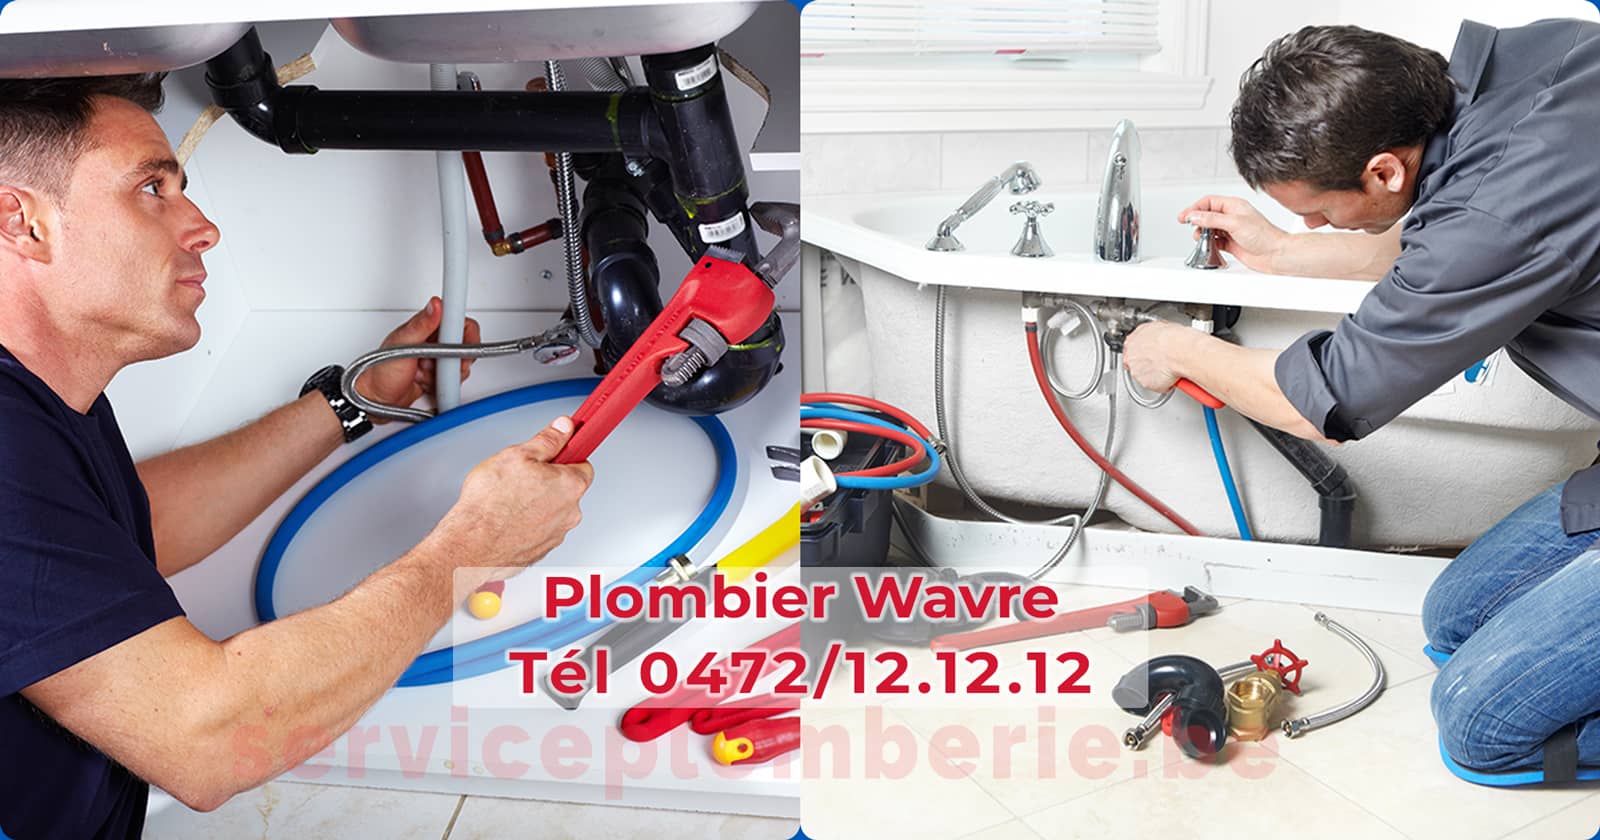 Plombier Wavre Agréé Professionnel Service Plomberie Tél 0472/12.12.12